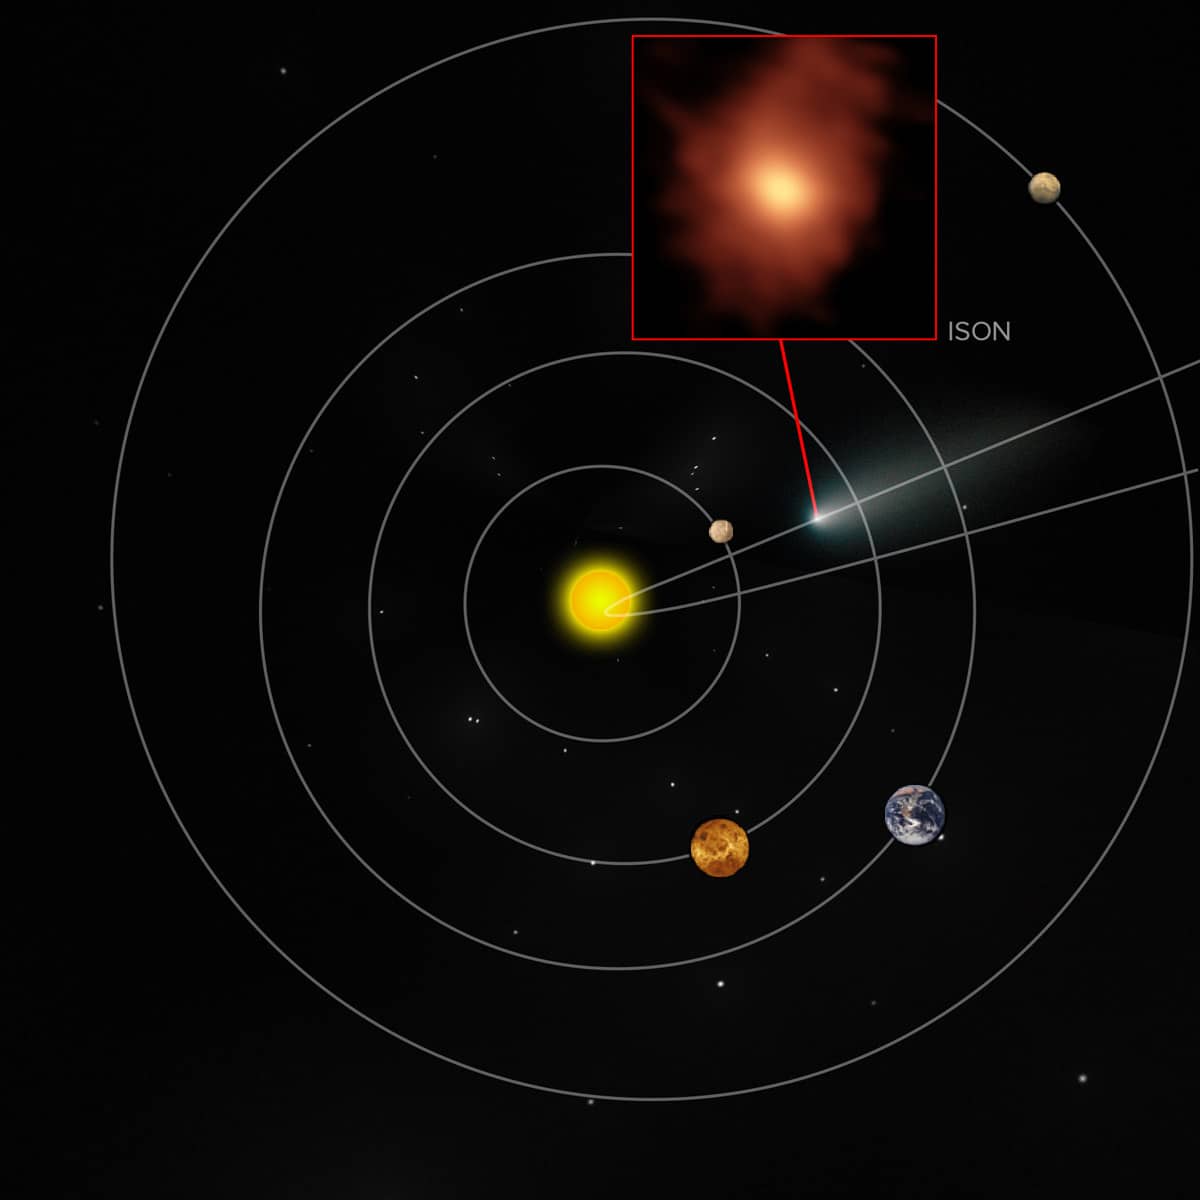 Localização aproximada do cometa ISON no nosso Sistema Solar no momento das observações do ALMA. Crédito: B. Saxton (NRAO / AUI / NSF); NASA / ESA Hubble; M. Cordiner, NASA, et al.